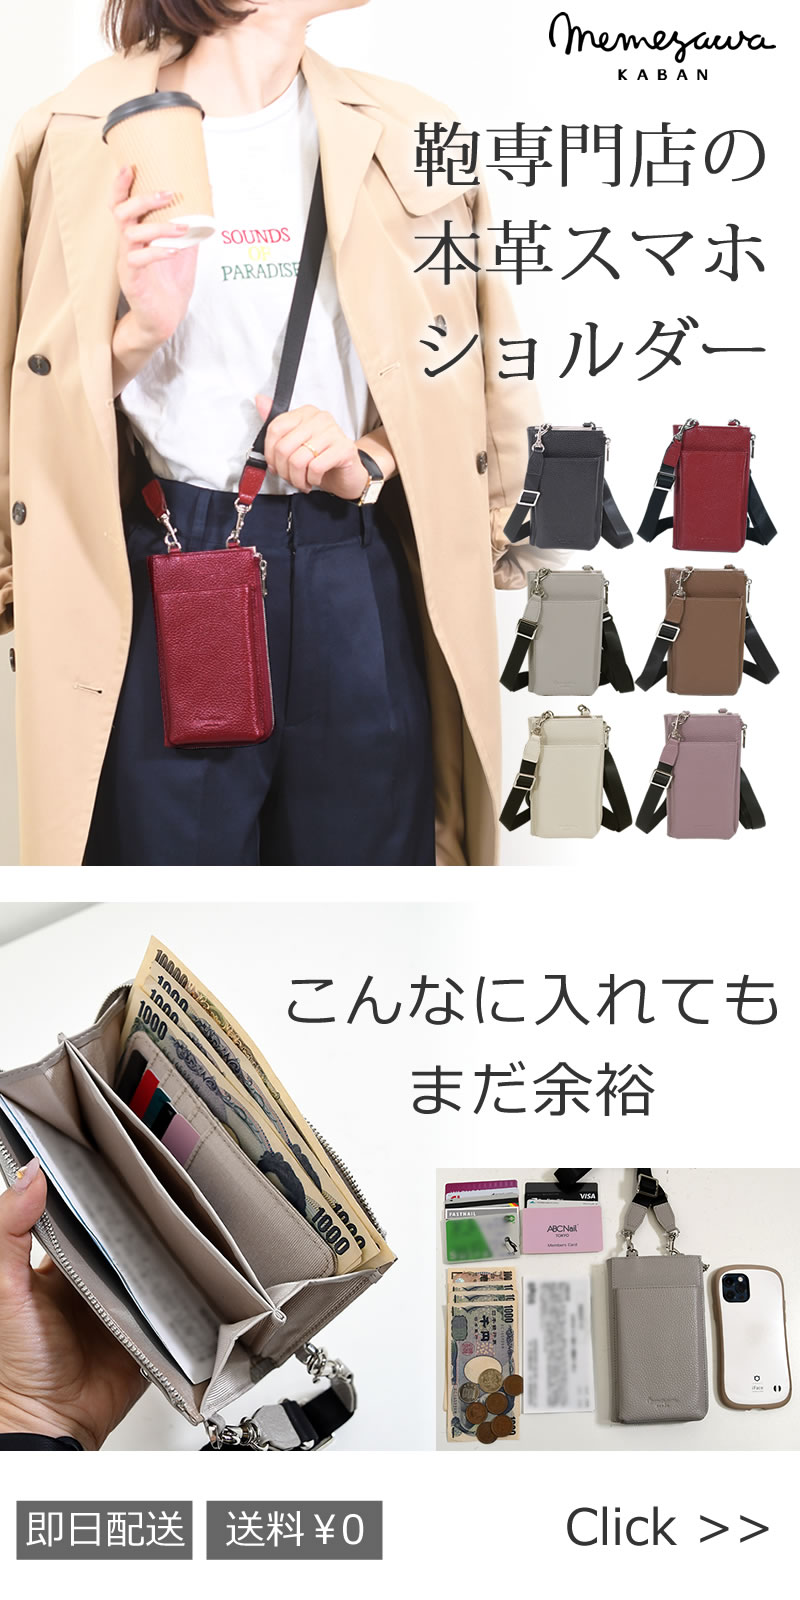 目々澤鞄(めめざわかばん)新商品鞄専門店の本革スマホショルダー555900